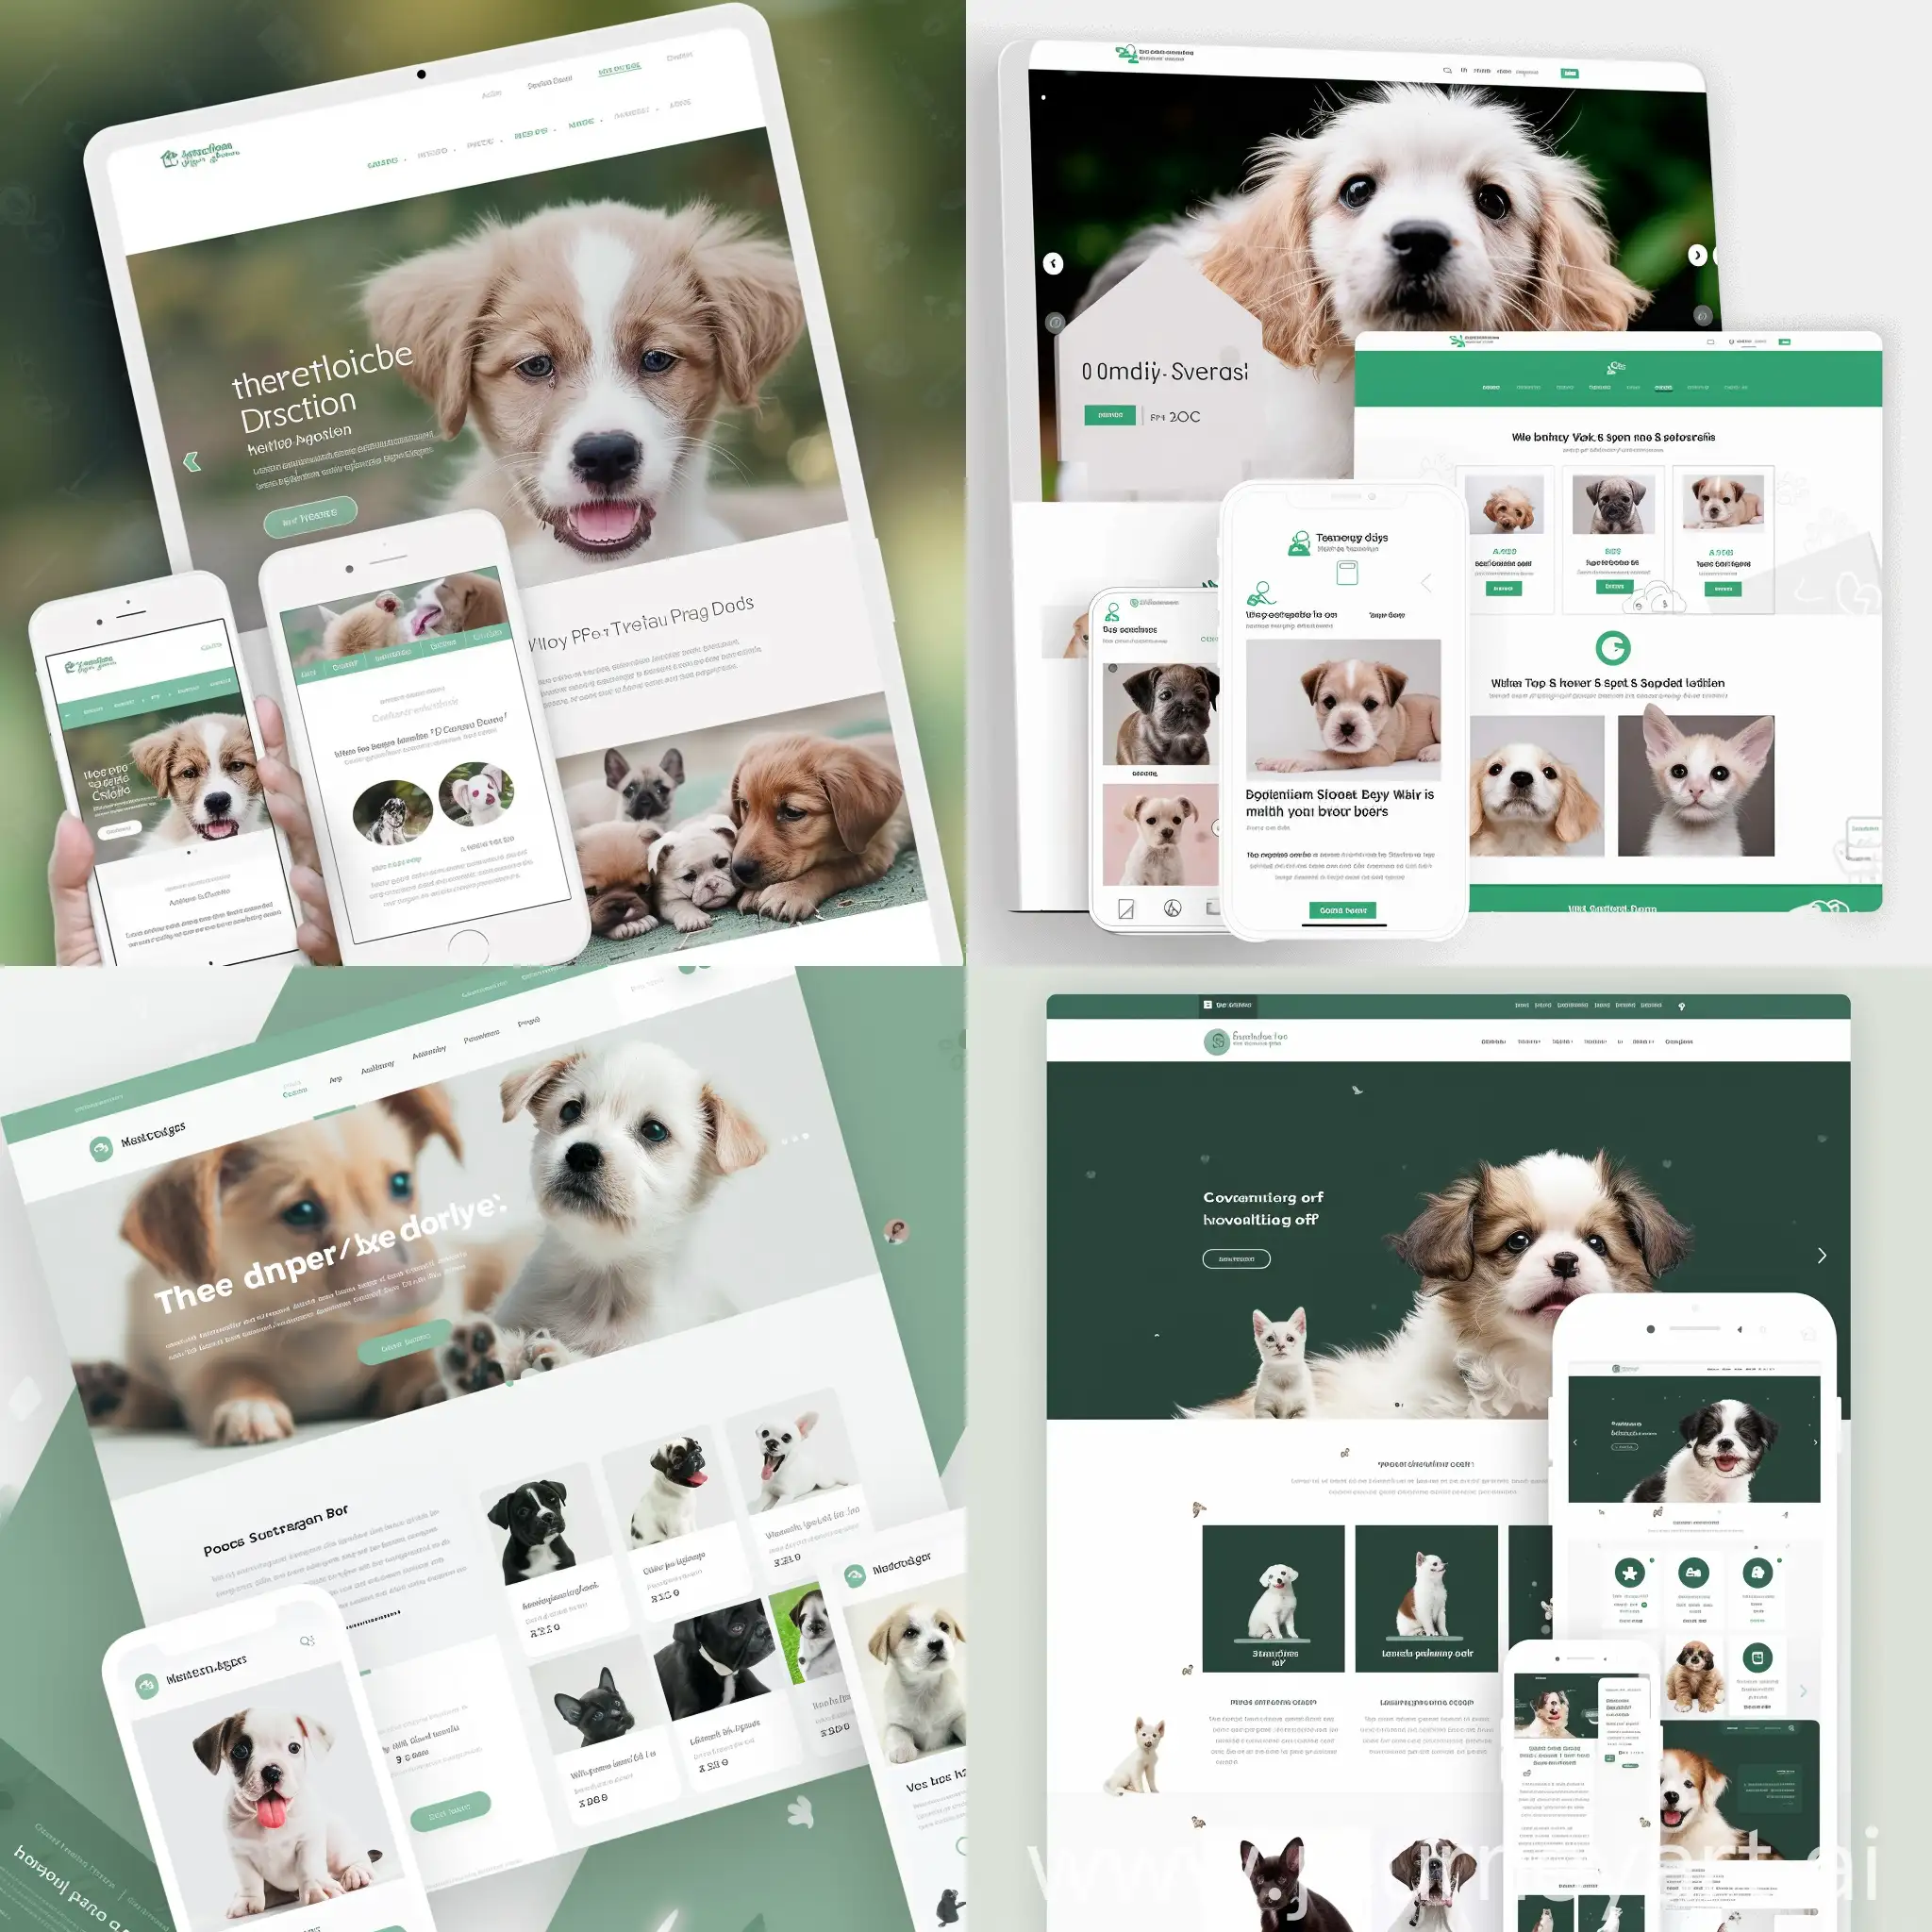 Создай макет веб-сайта (адаптивный для ПК и телефона) для размещения объявлений о бездомных животных, выполненный в белом и зеленом цветах.